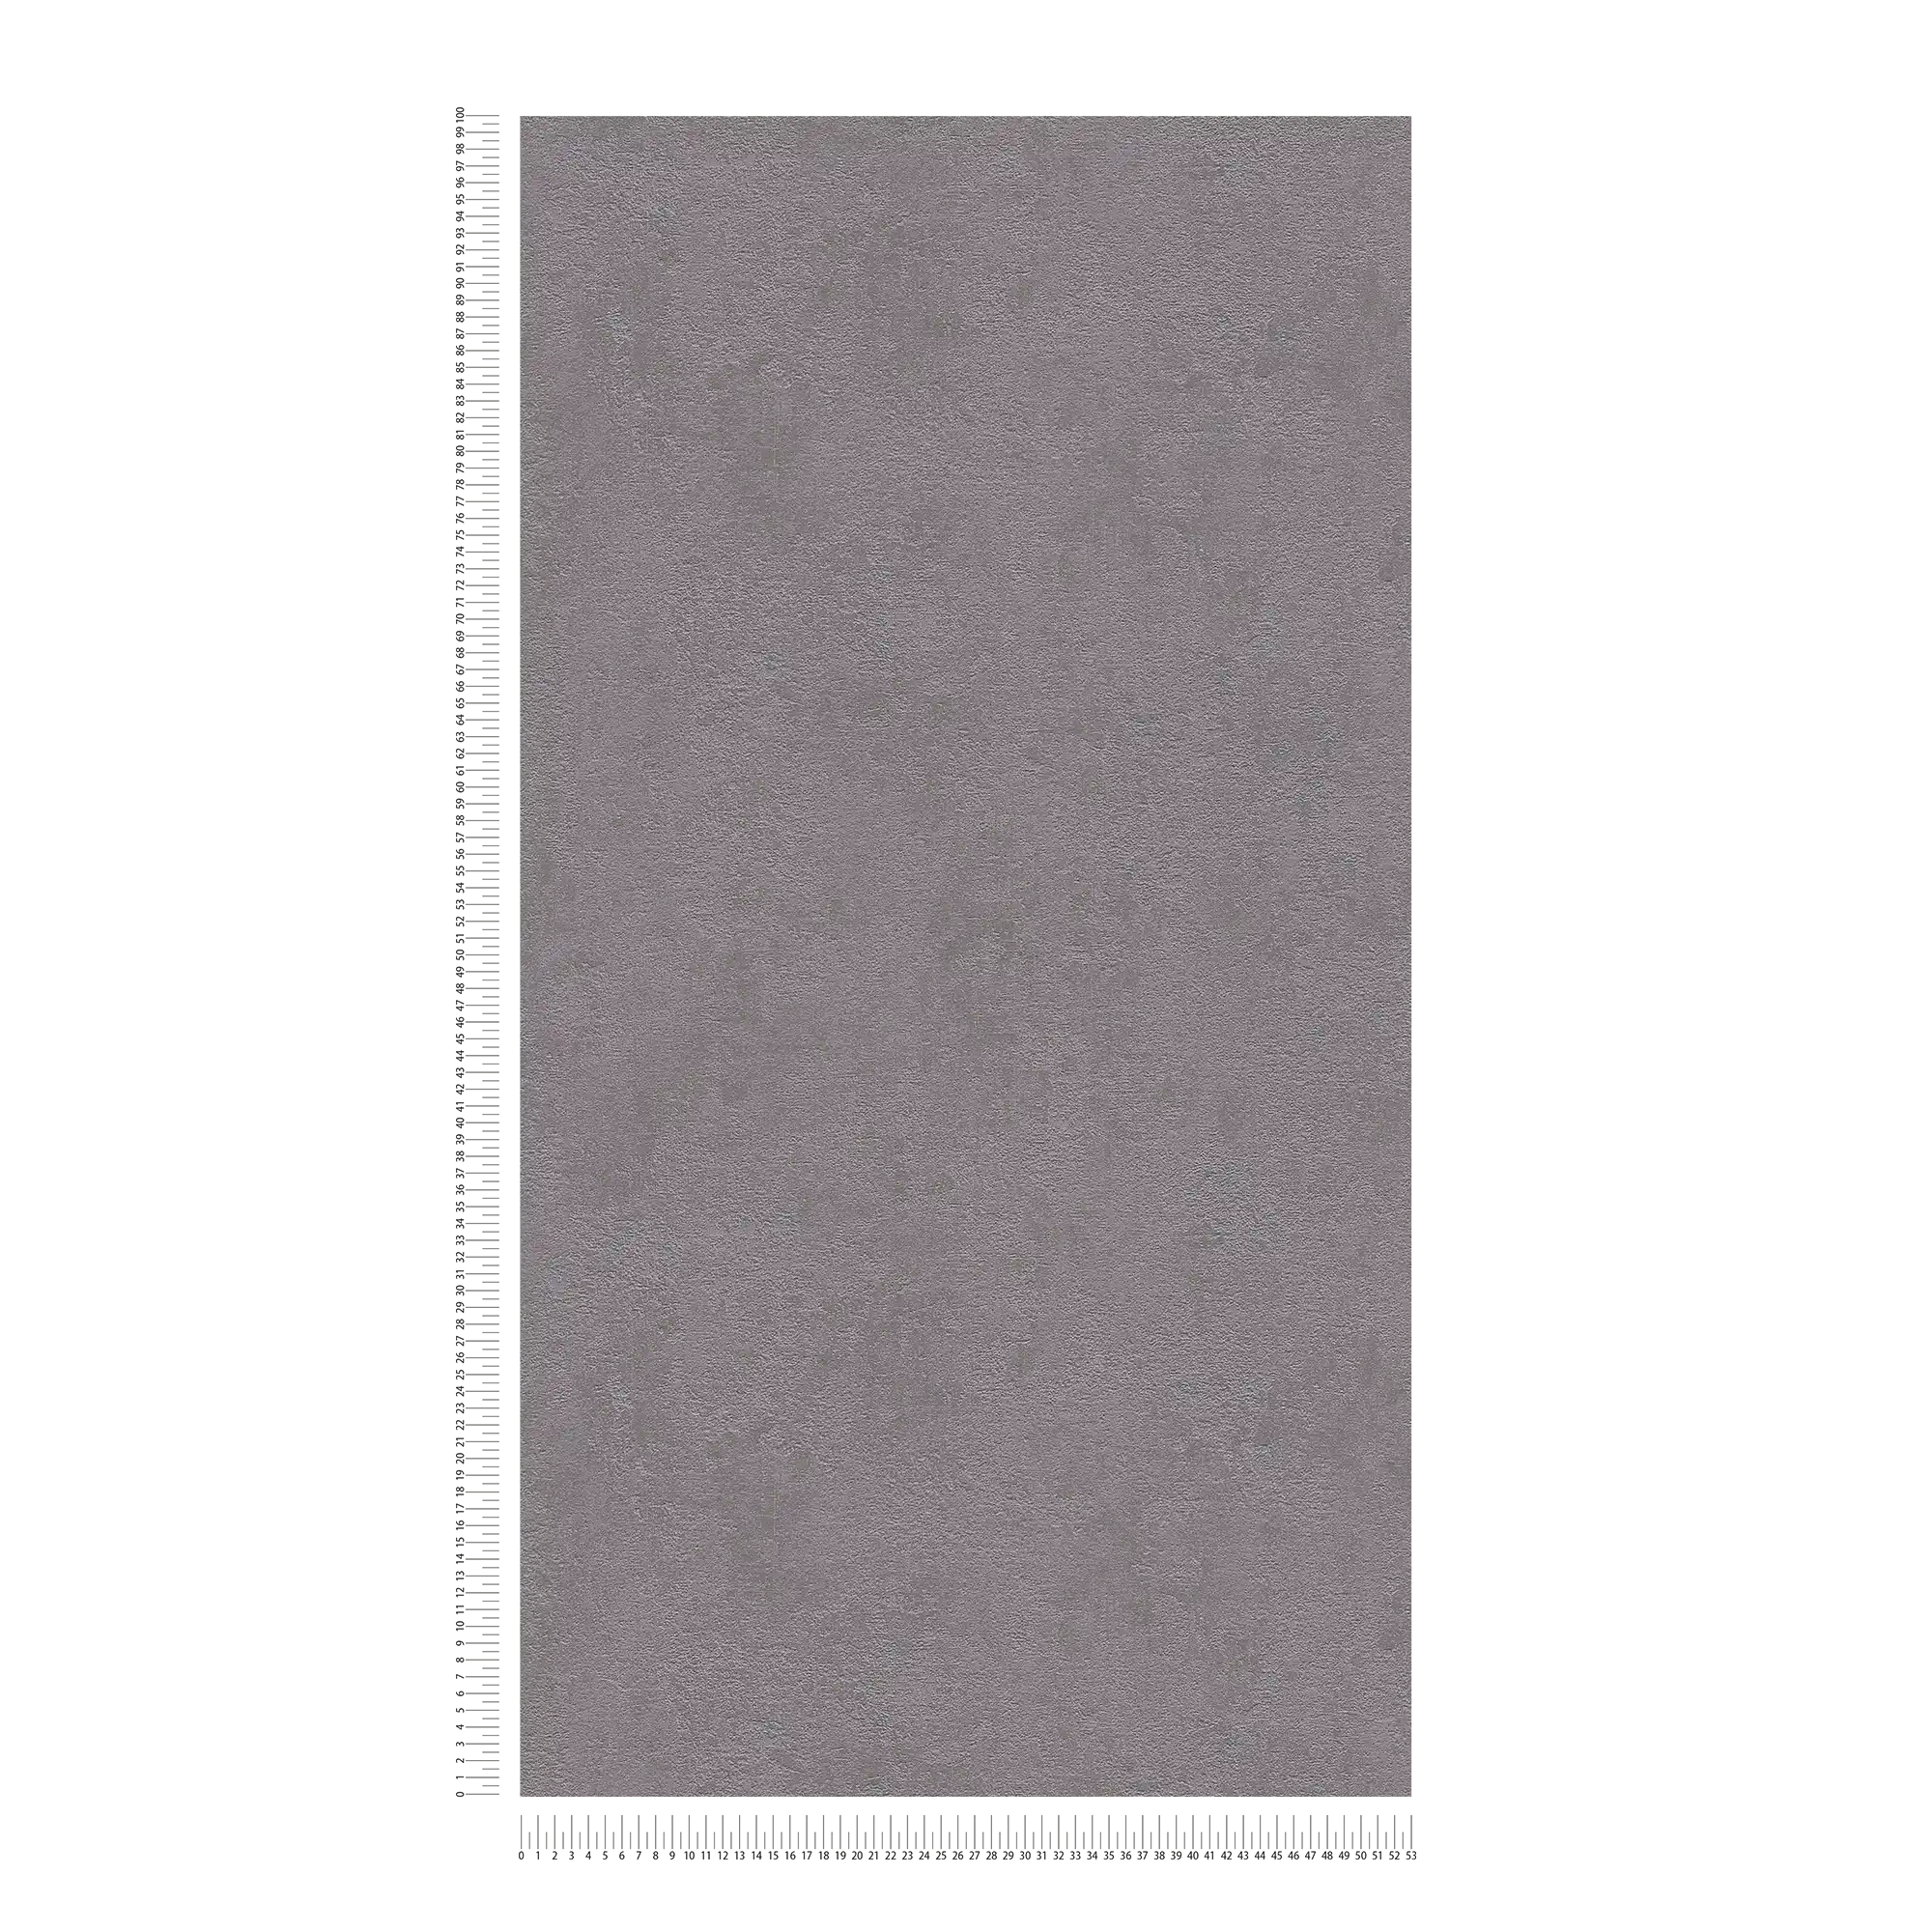             Papier peint plâtre structuré, uni & satiné - gris foncé
        